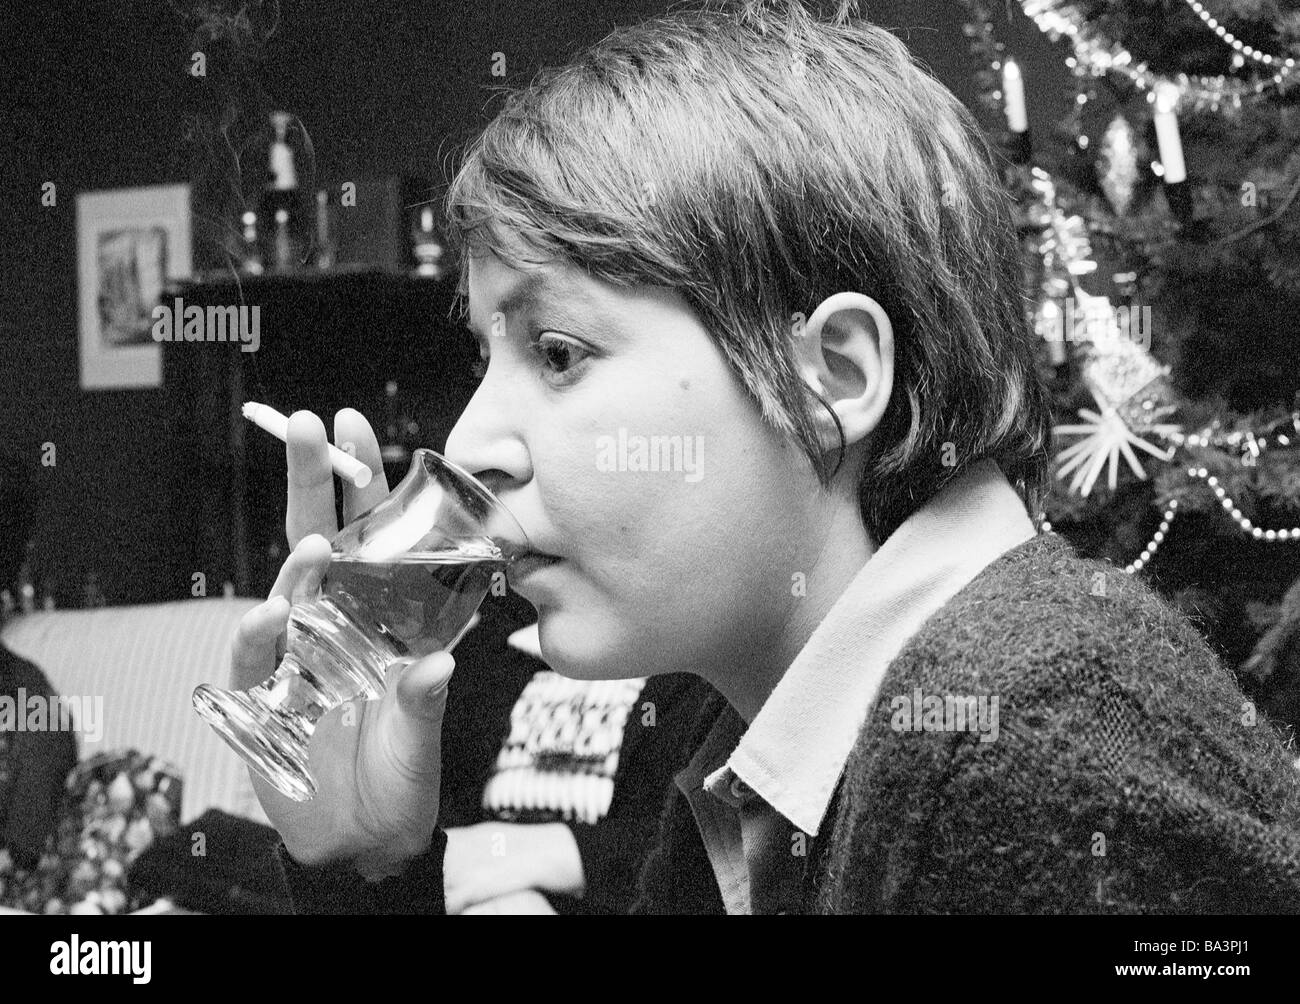 Negli anni settanta, foto in bianco e nero, persone, giovane donna detiene una sigaretta e un vetro con alcol in mano, ritratto, di età compresa tra i 25 e i 30 anni, Monika Foto Stock